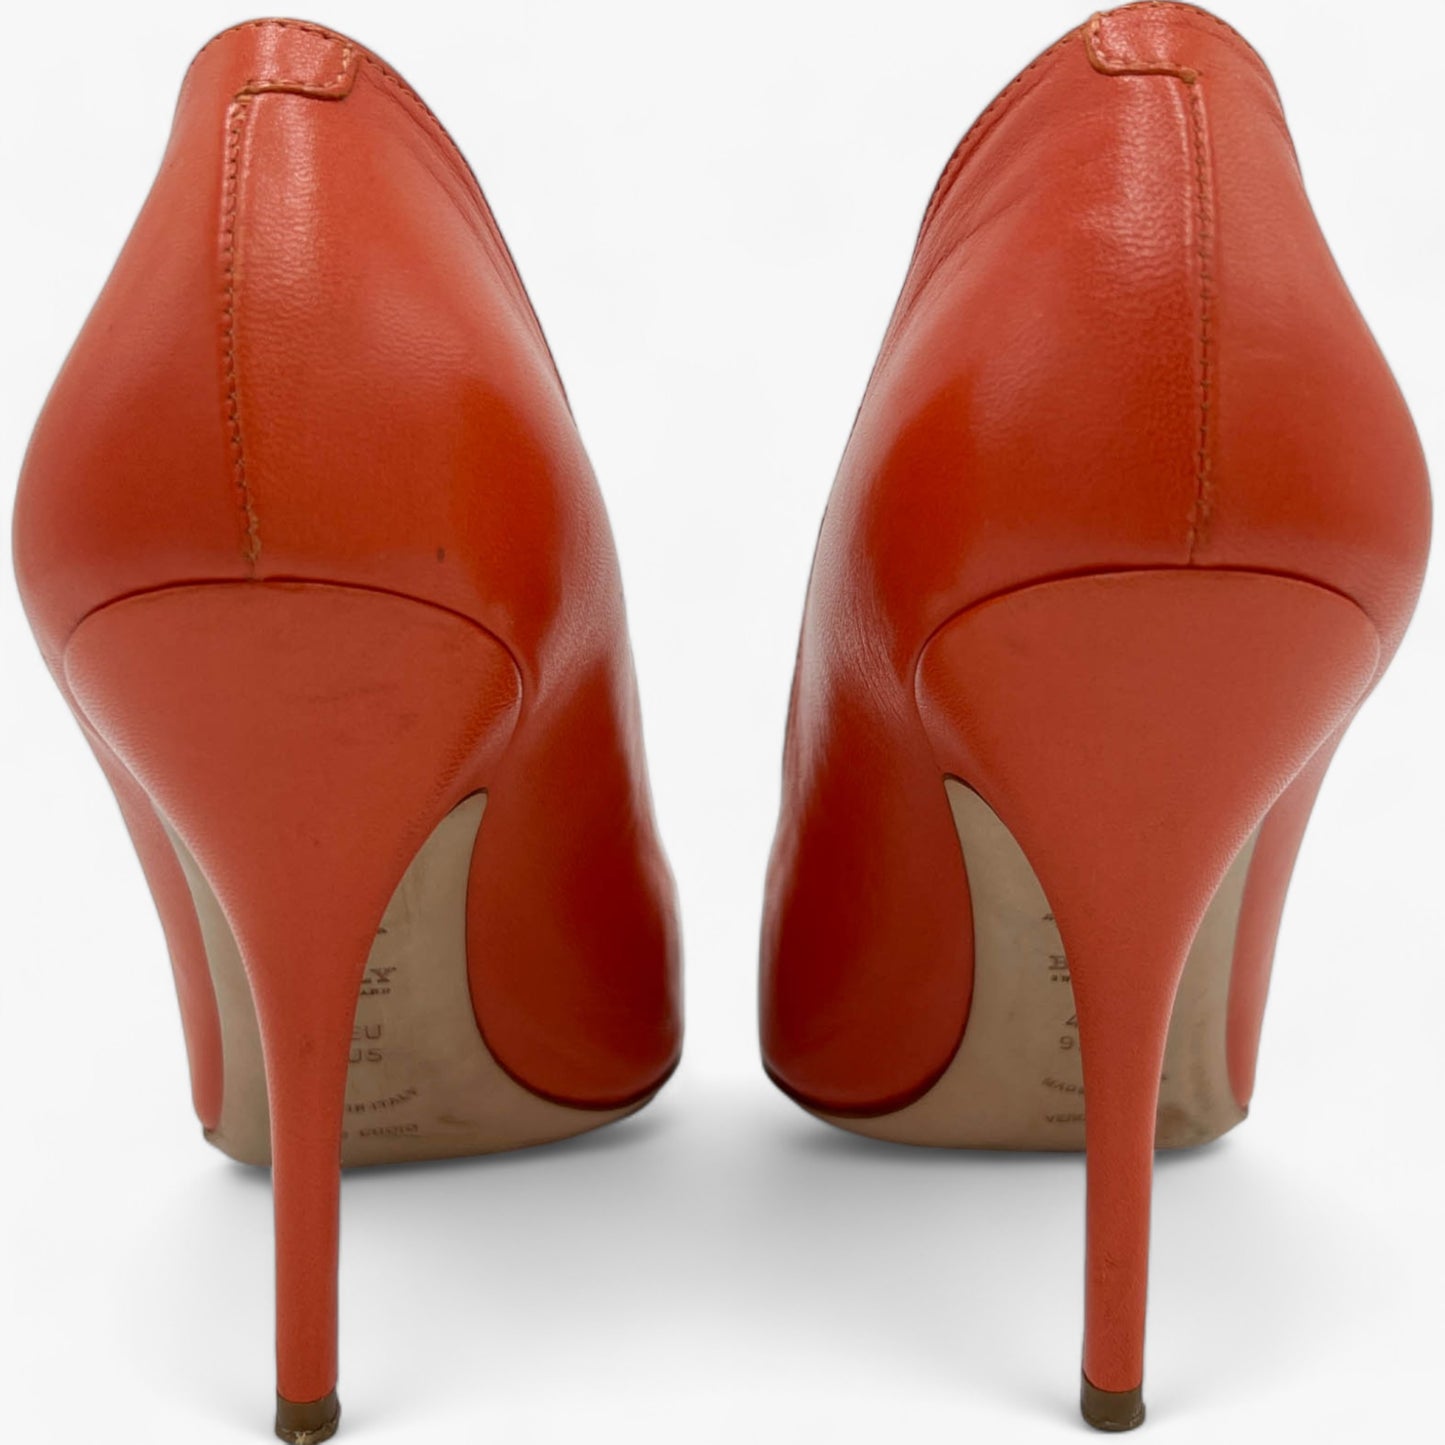 Bally Orange Patent Leather Heeled Shoes EU40 ~ US9.5